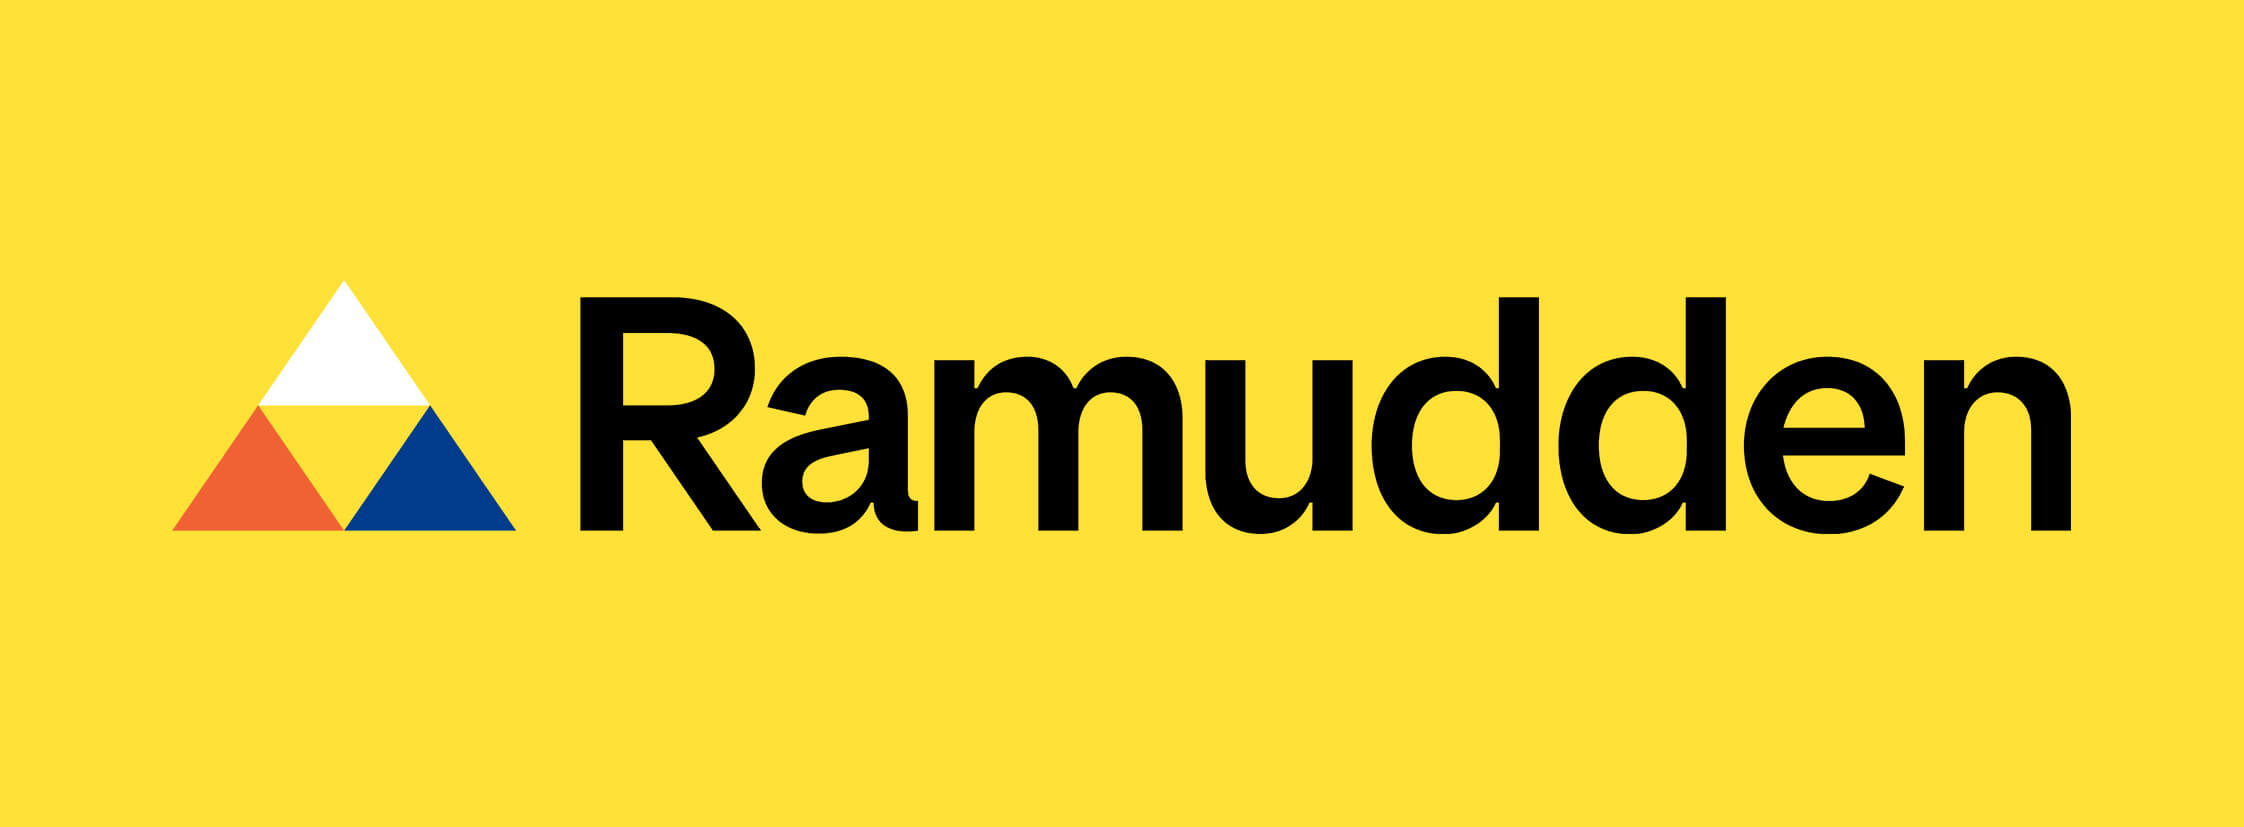 ramudden-logo-primär-alternativ.jpg